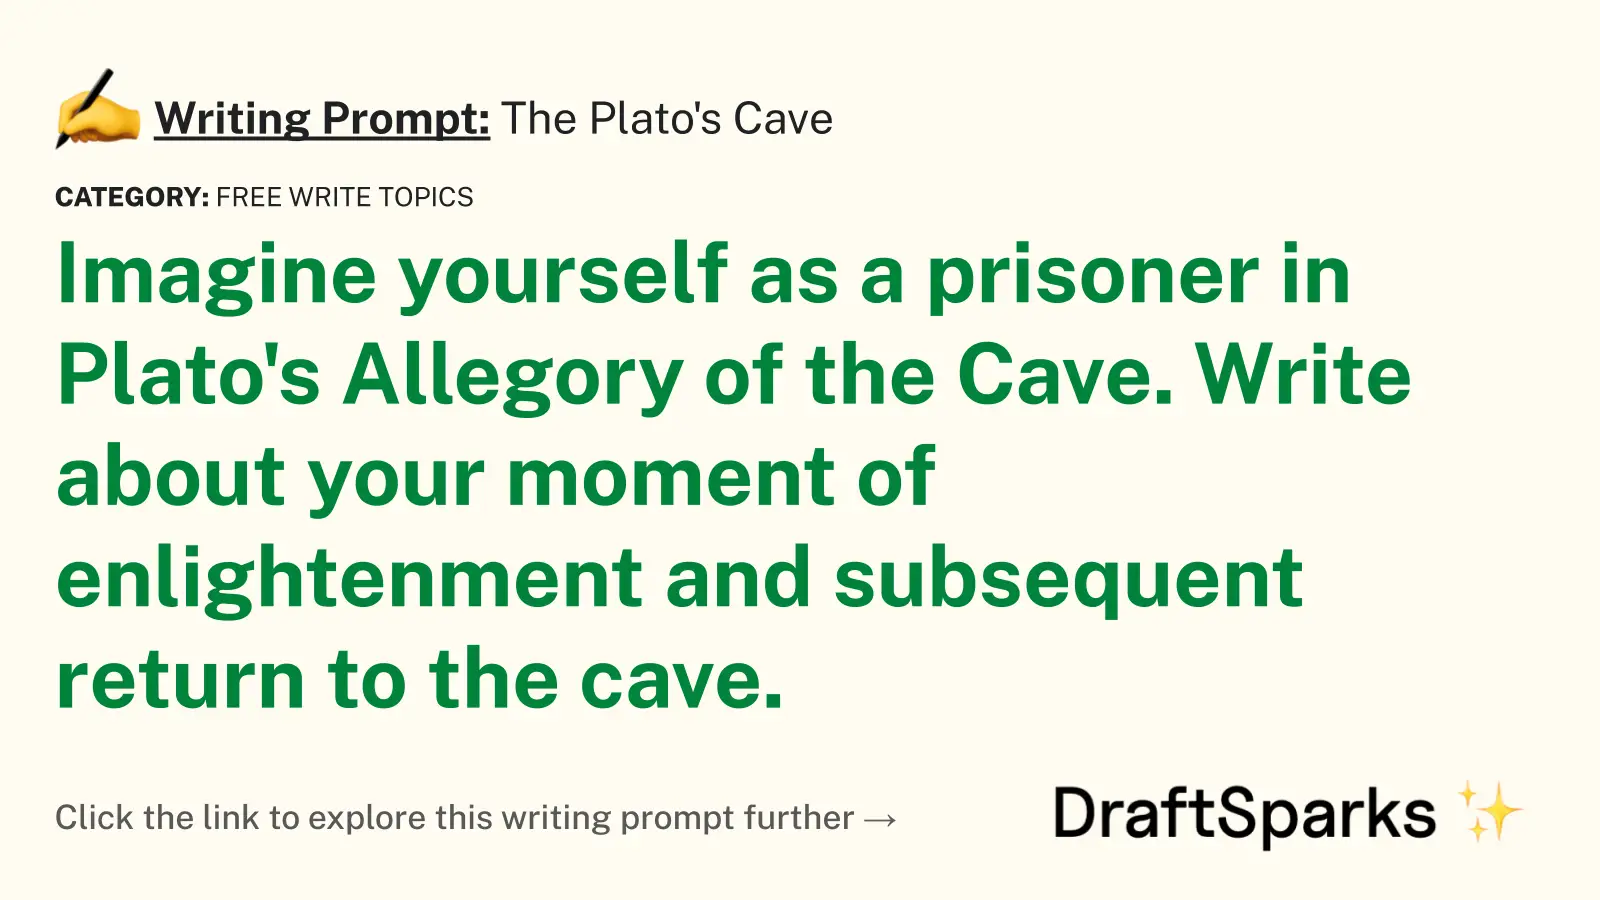 The Plato’s Cave